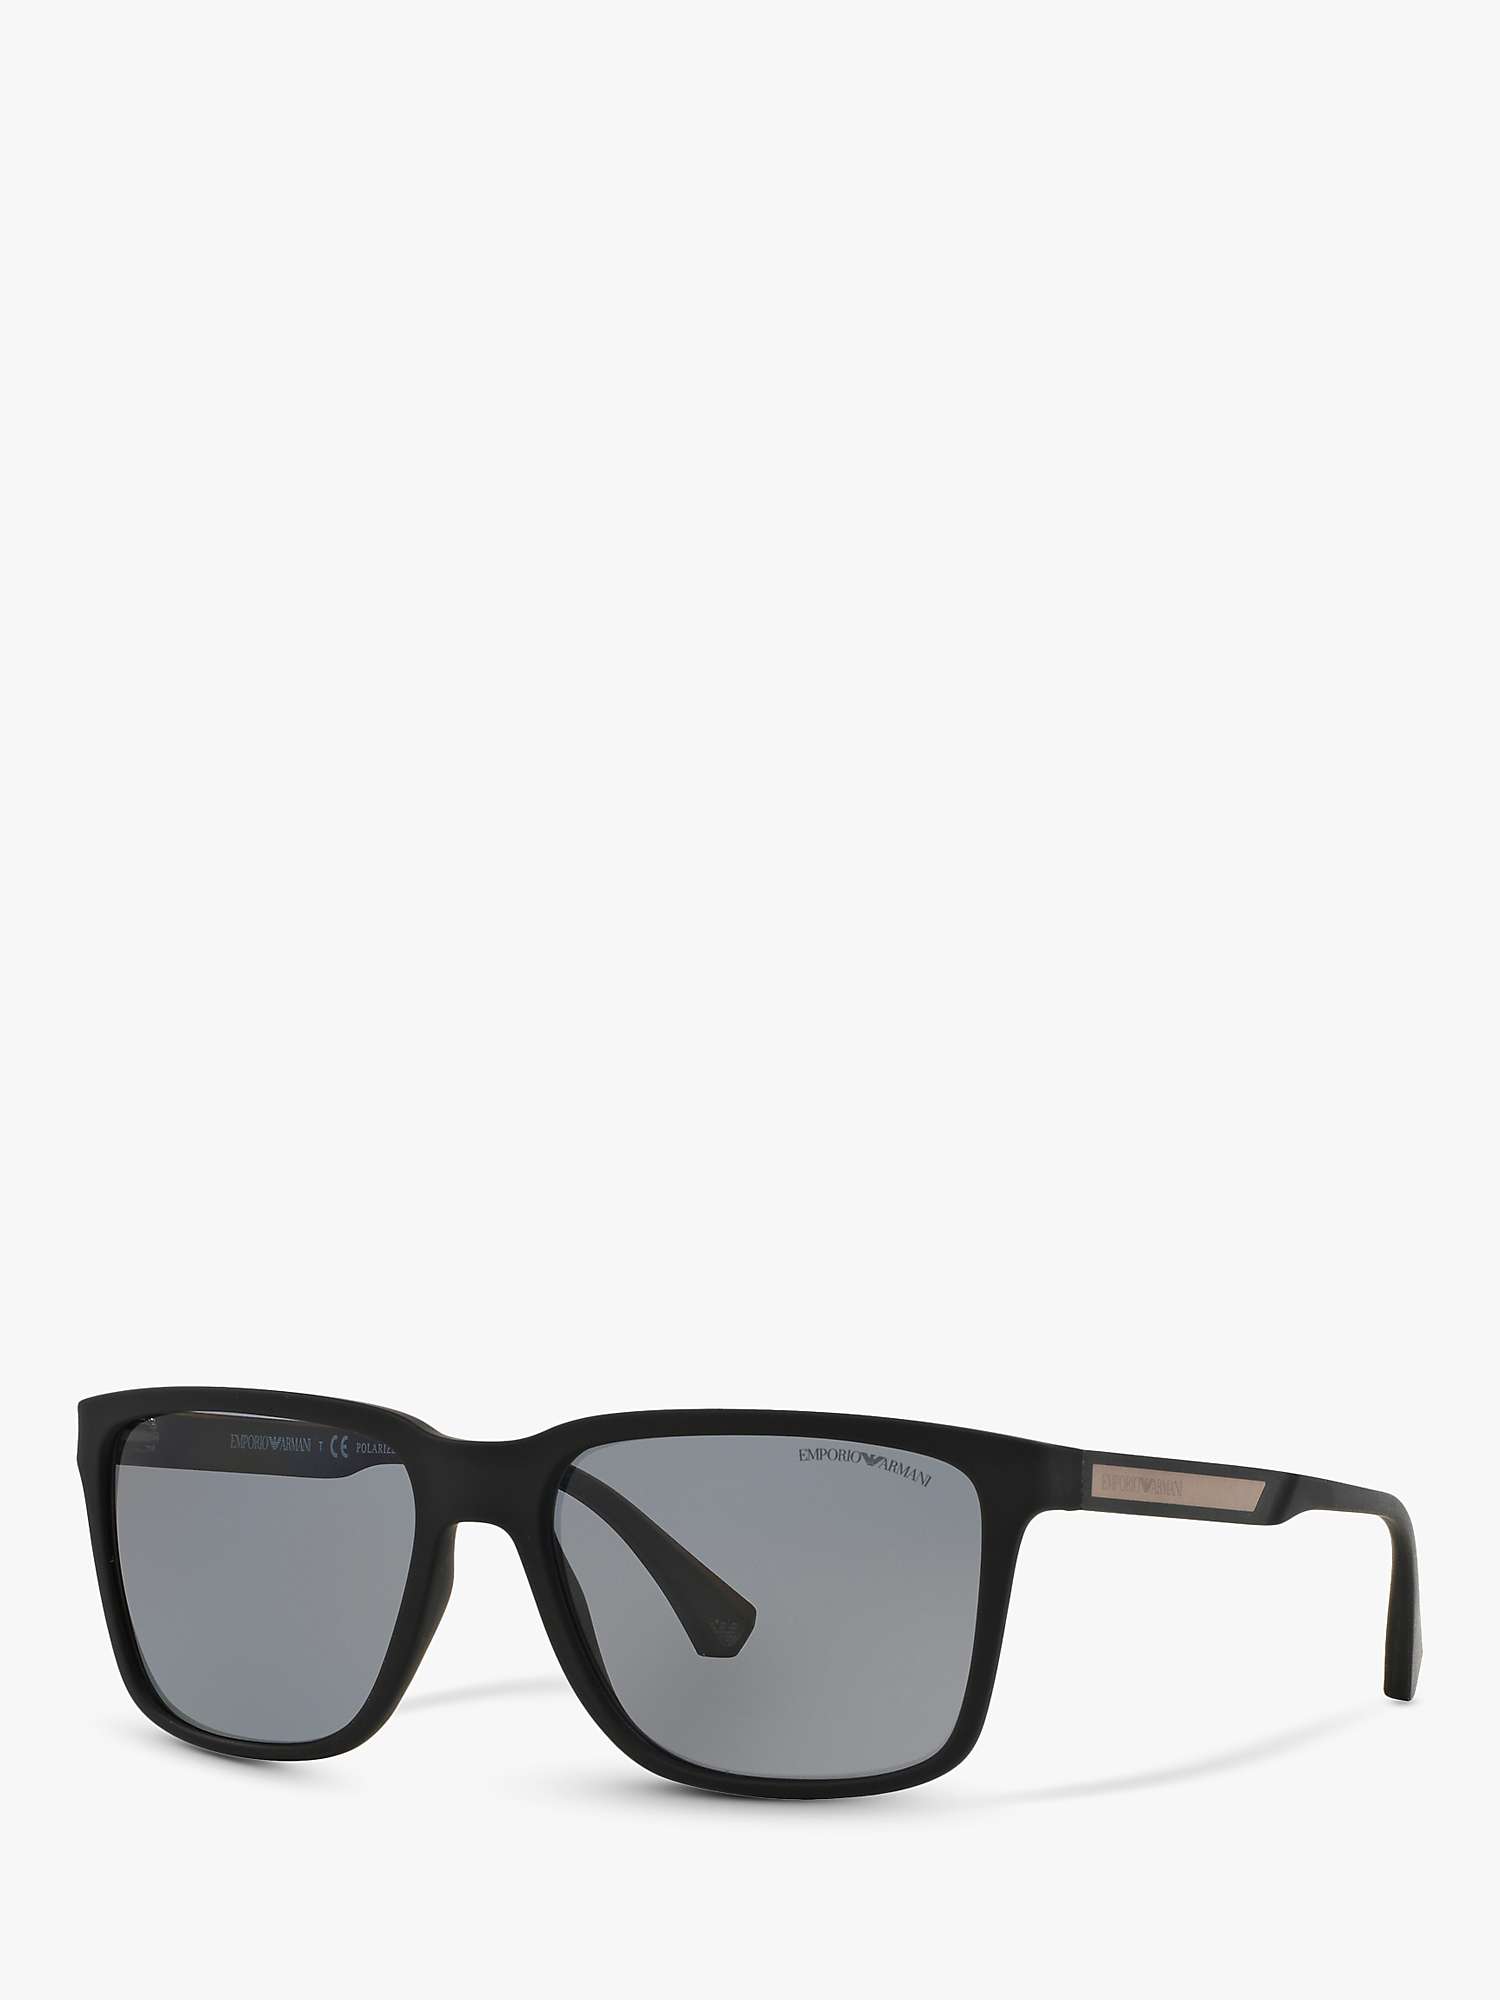 Buy Emporio Armani EA4047 Men's Square Polarised Sunglasses, Rubber Black/Grey Online at johnlewis.com